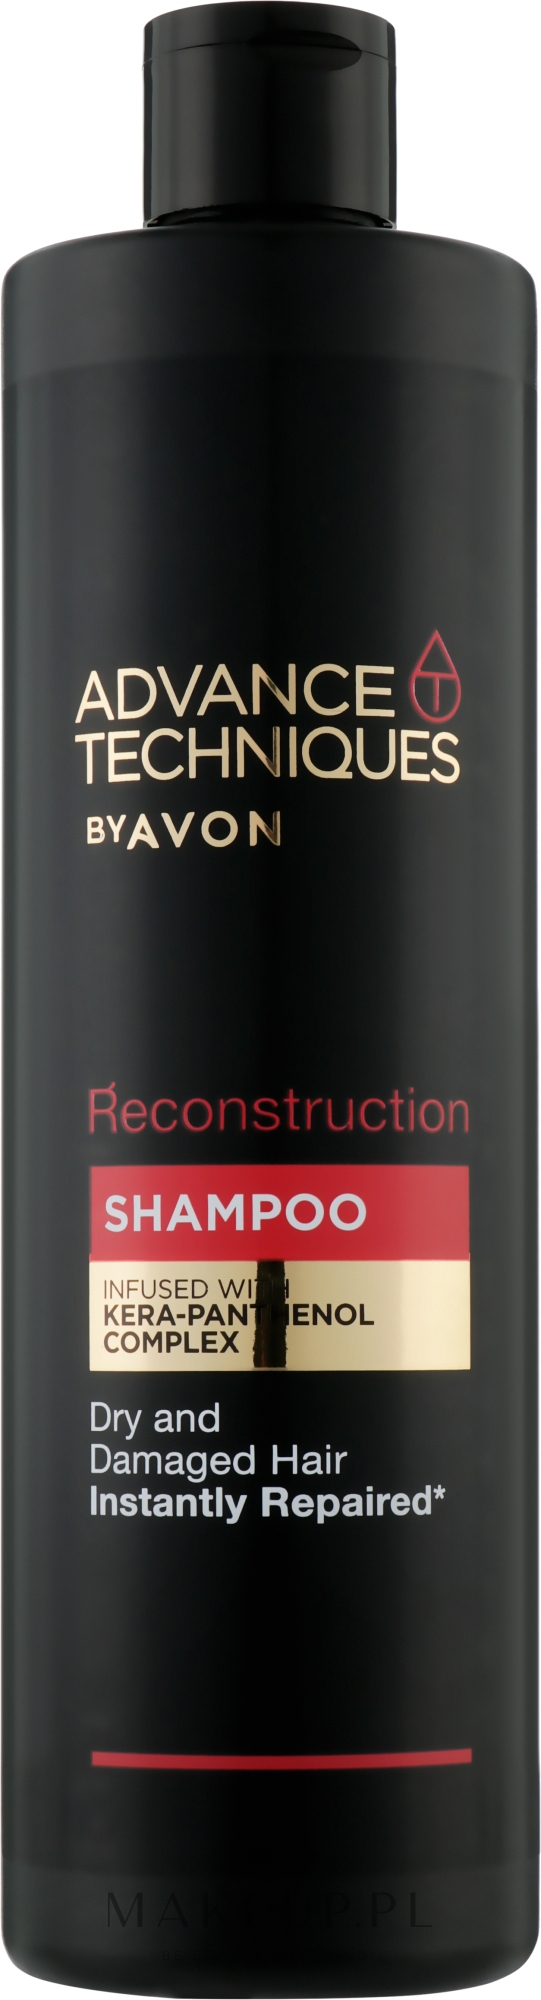 szampon avon natychmiastowa naprawa skład